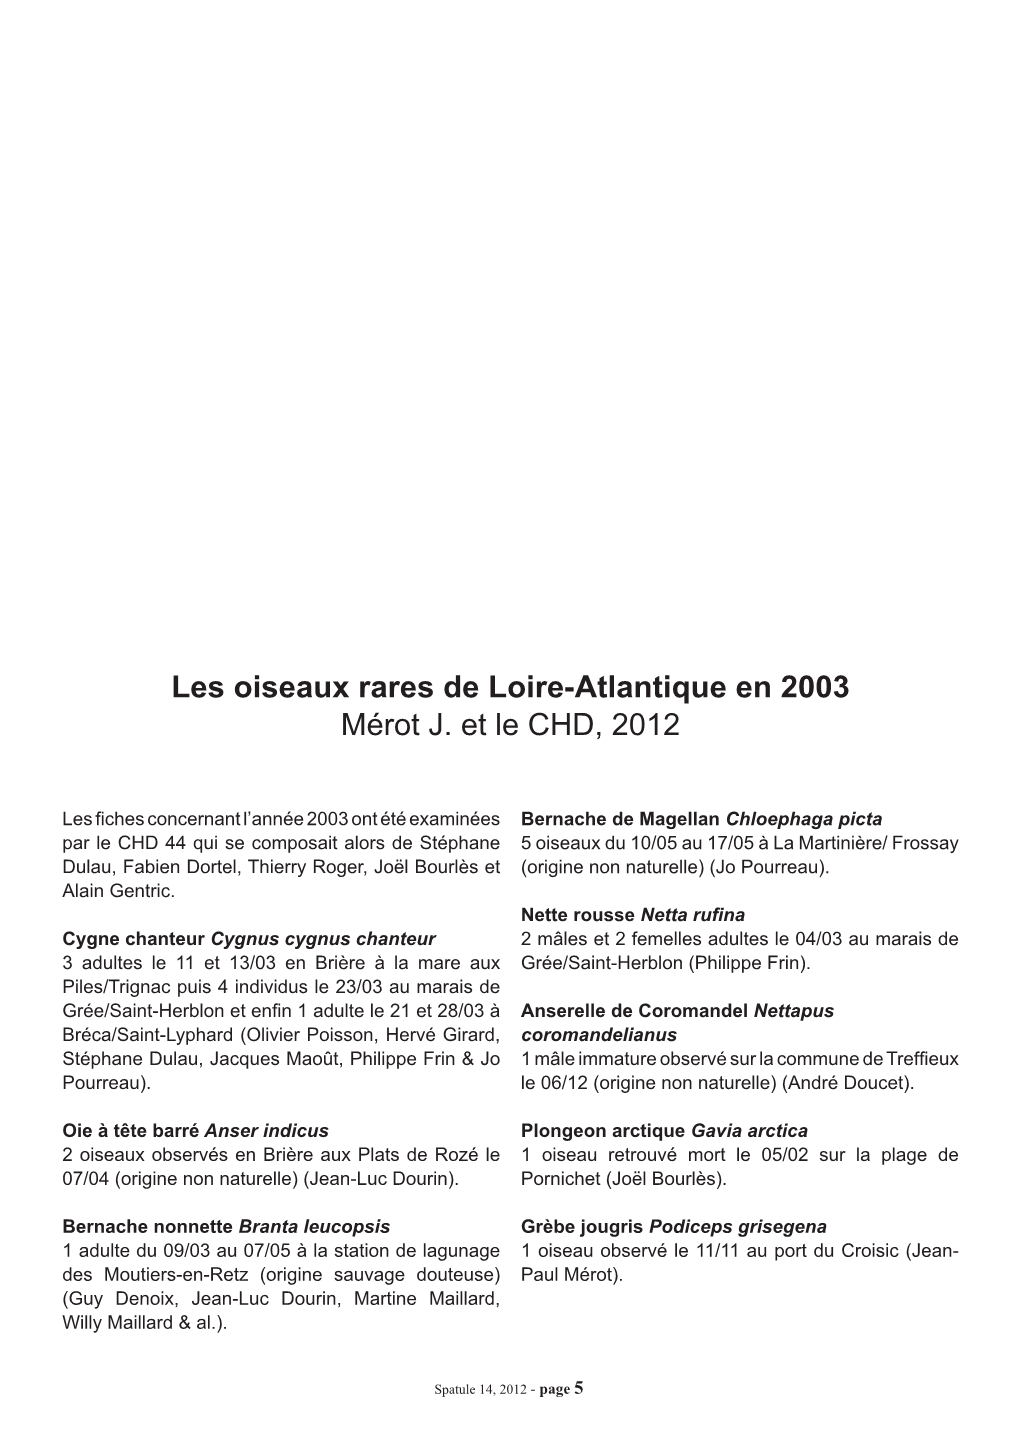 Les Oiseaux Rares De Loire-Atlantique En 2003 Mérot J. Et Le CHD, 2012